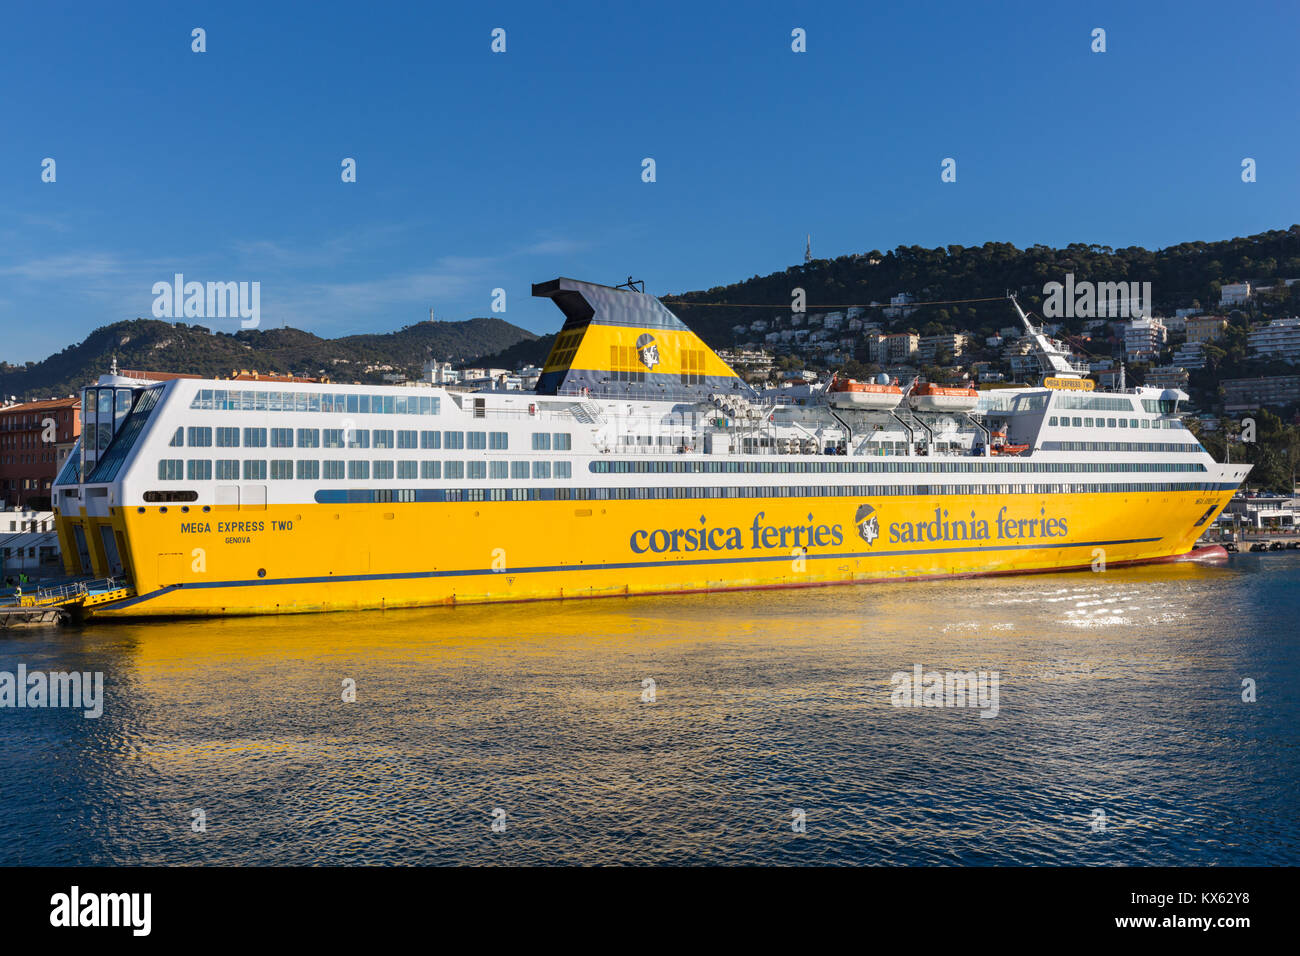 Corsica Sardinia Ferries, große Fähre im Hafen Lympia, Hafen von Nizza,  Côte d'Azur, Frankreich verankert Stockfotografie - Alamy